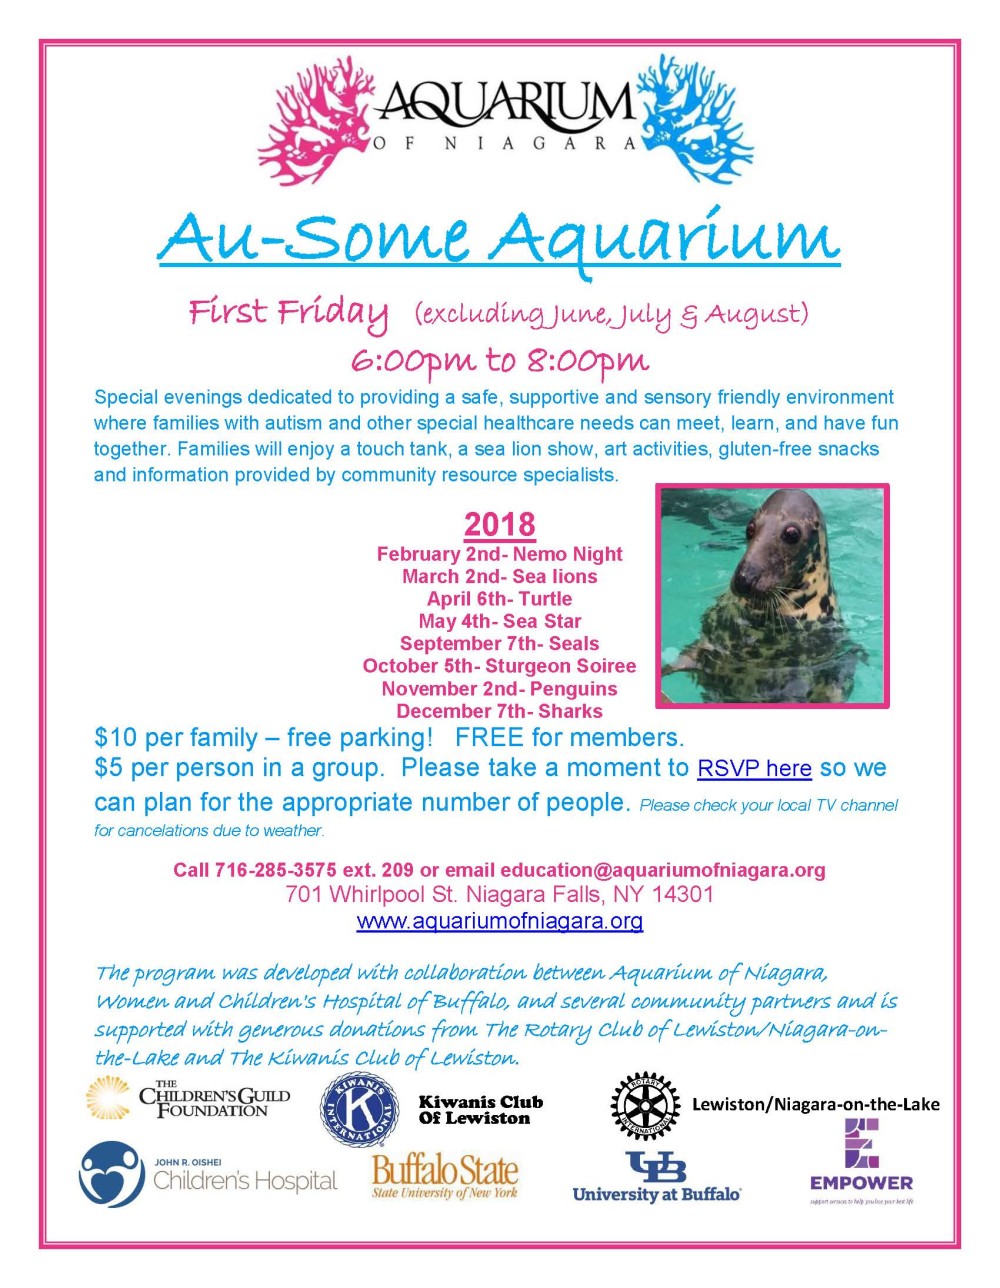 2018 au-some aquarium flyer